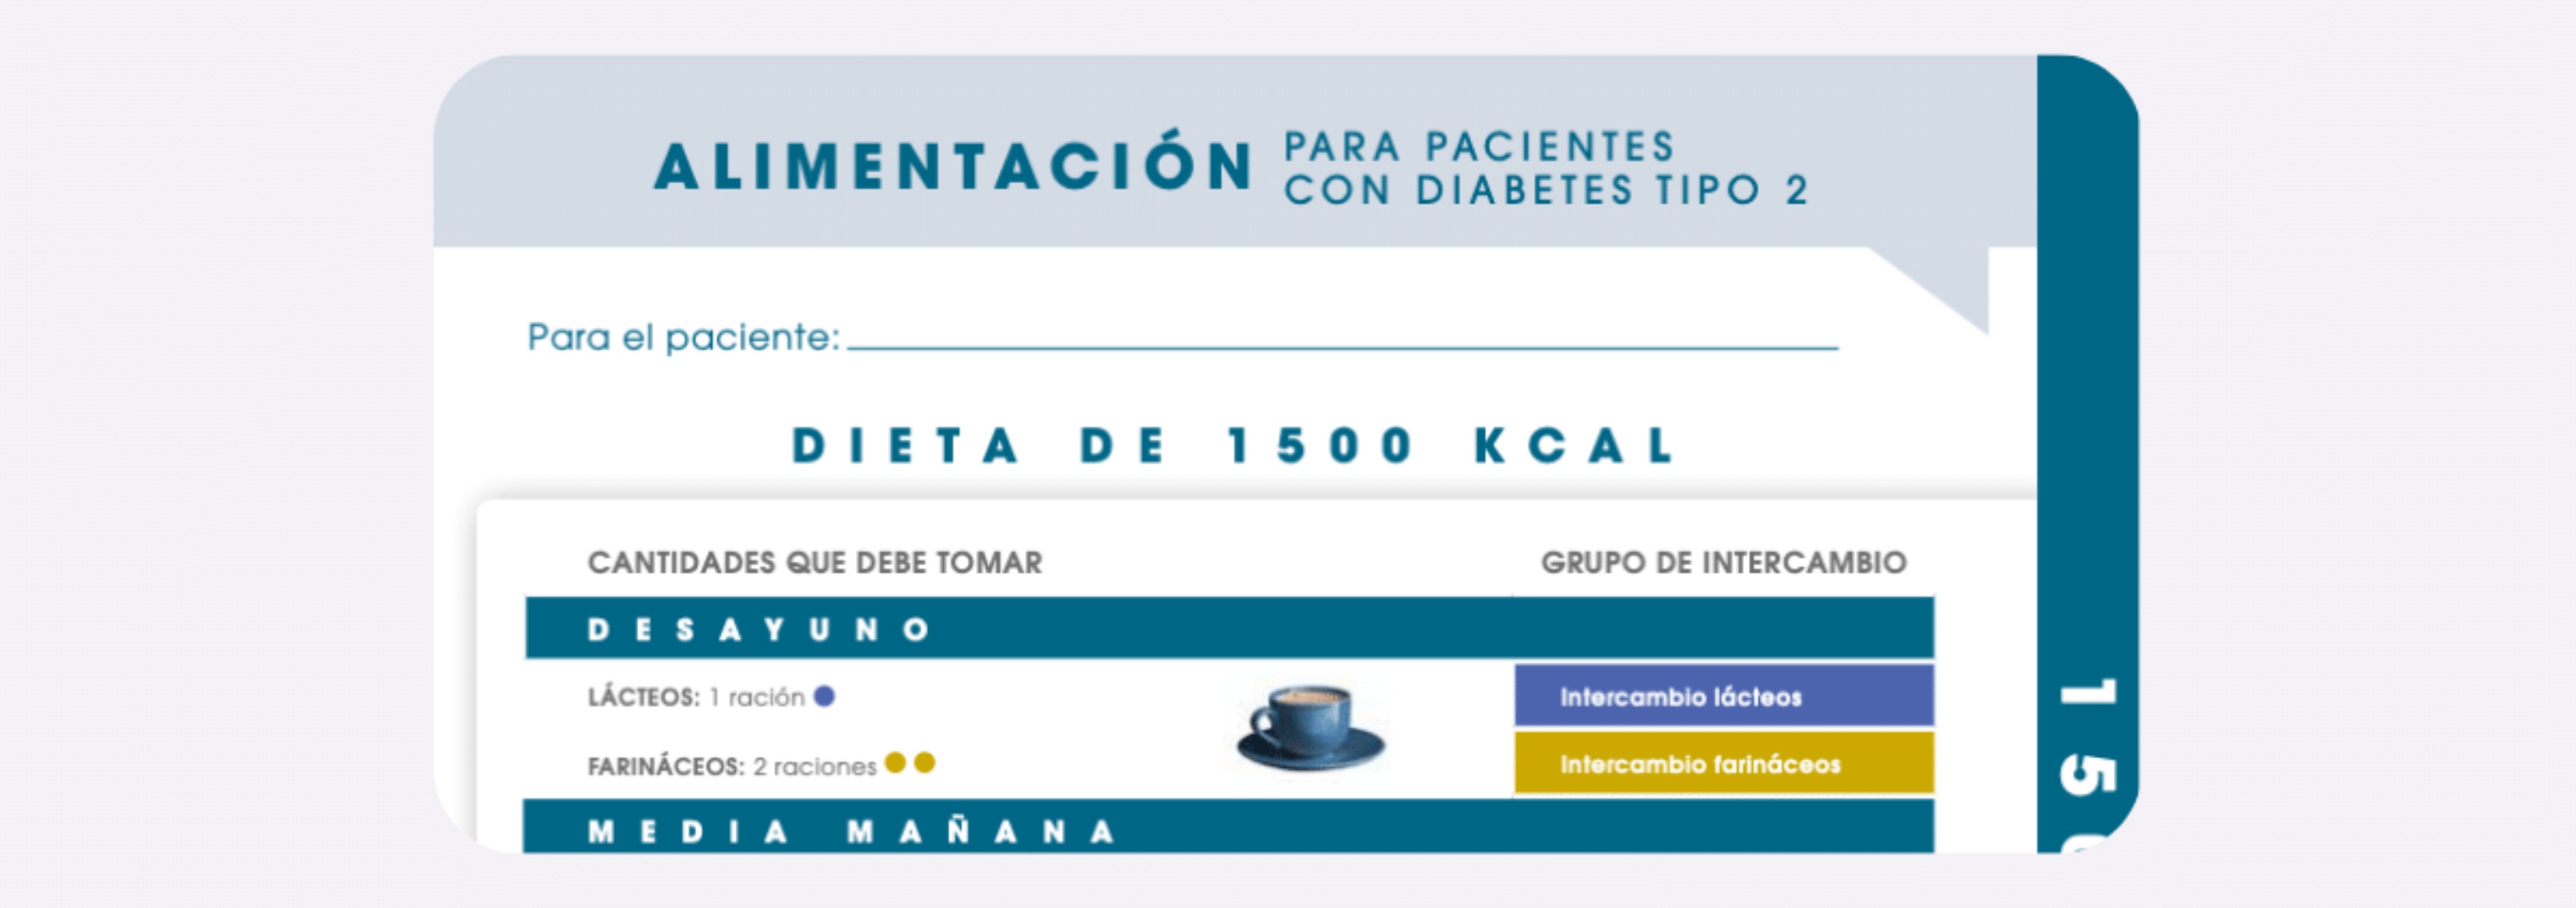 Dieta Equilibrada de 1500 kcal para personas con Diabetes